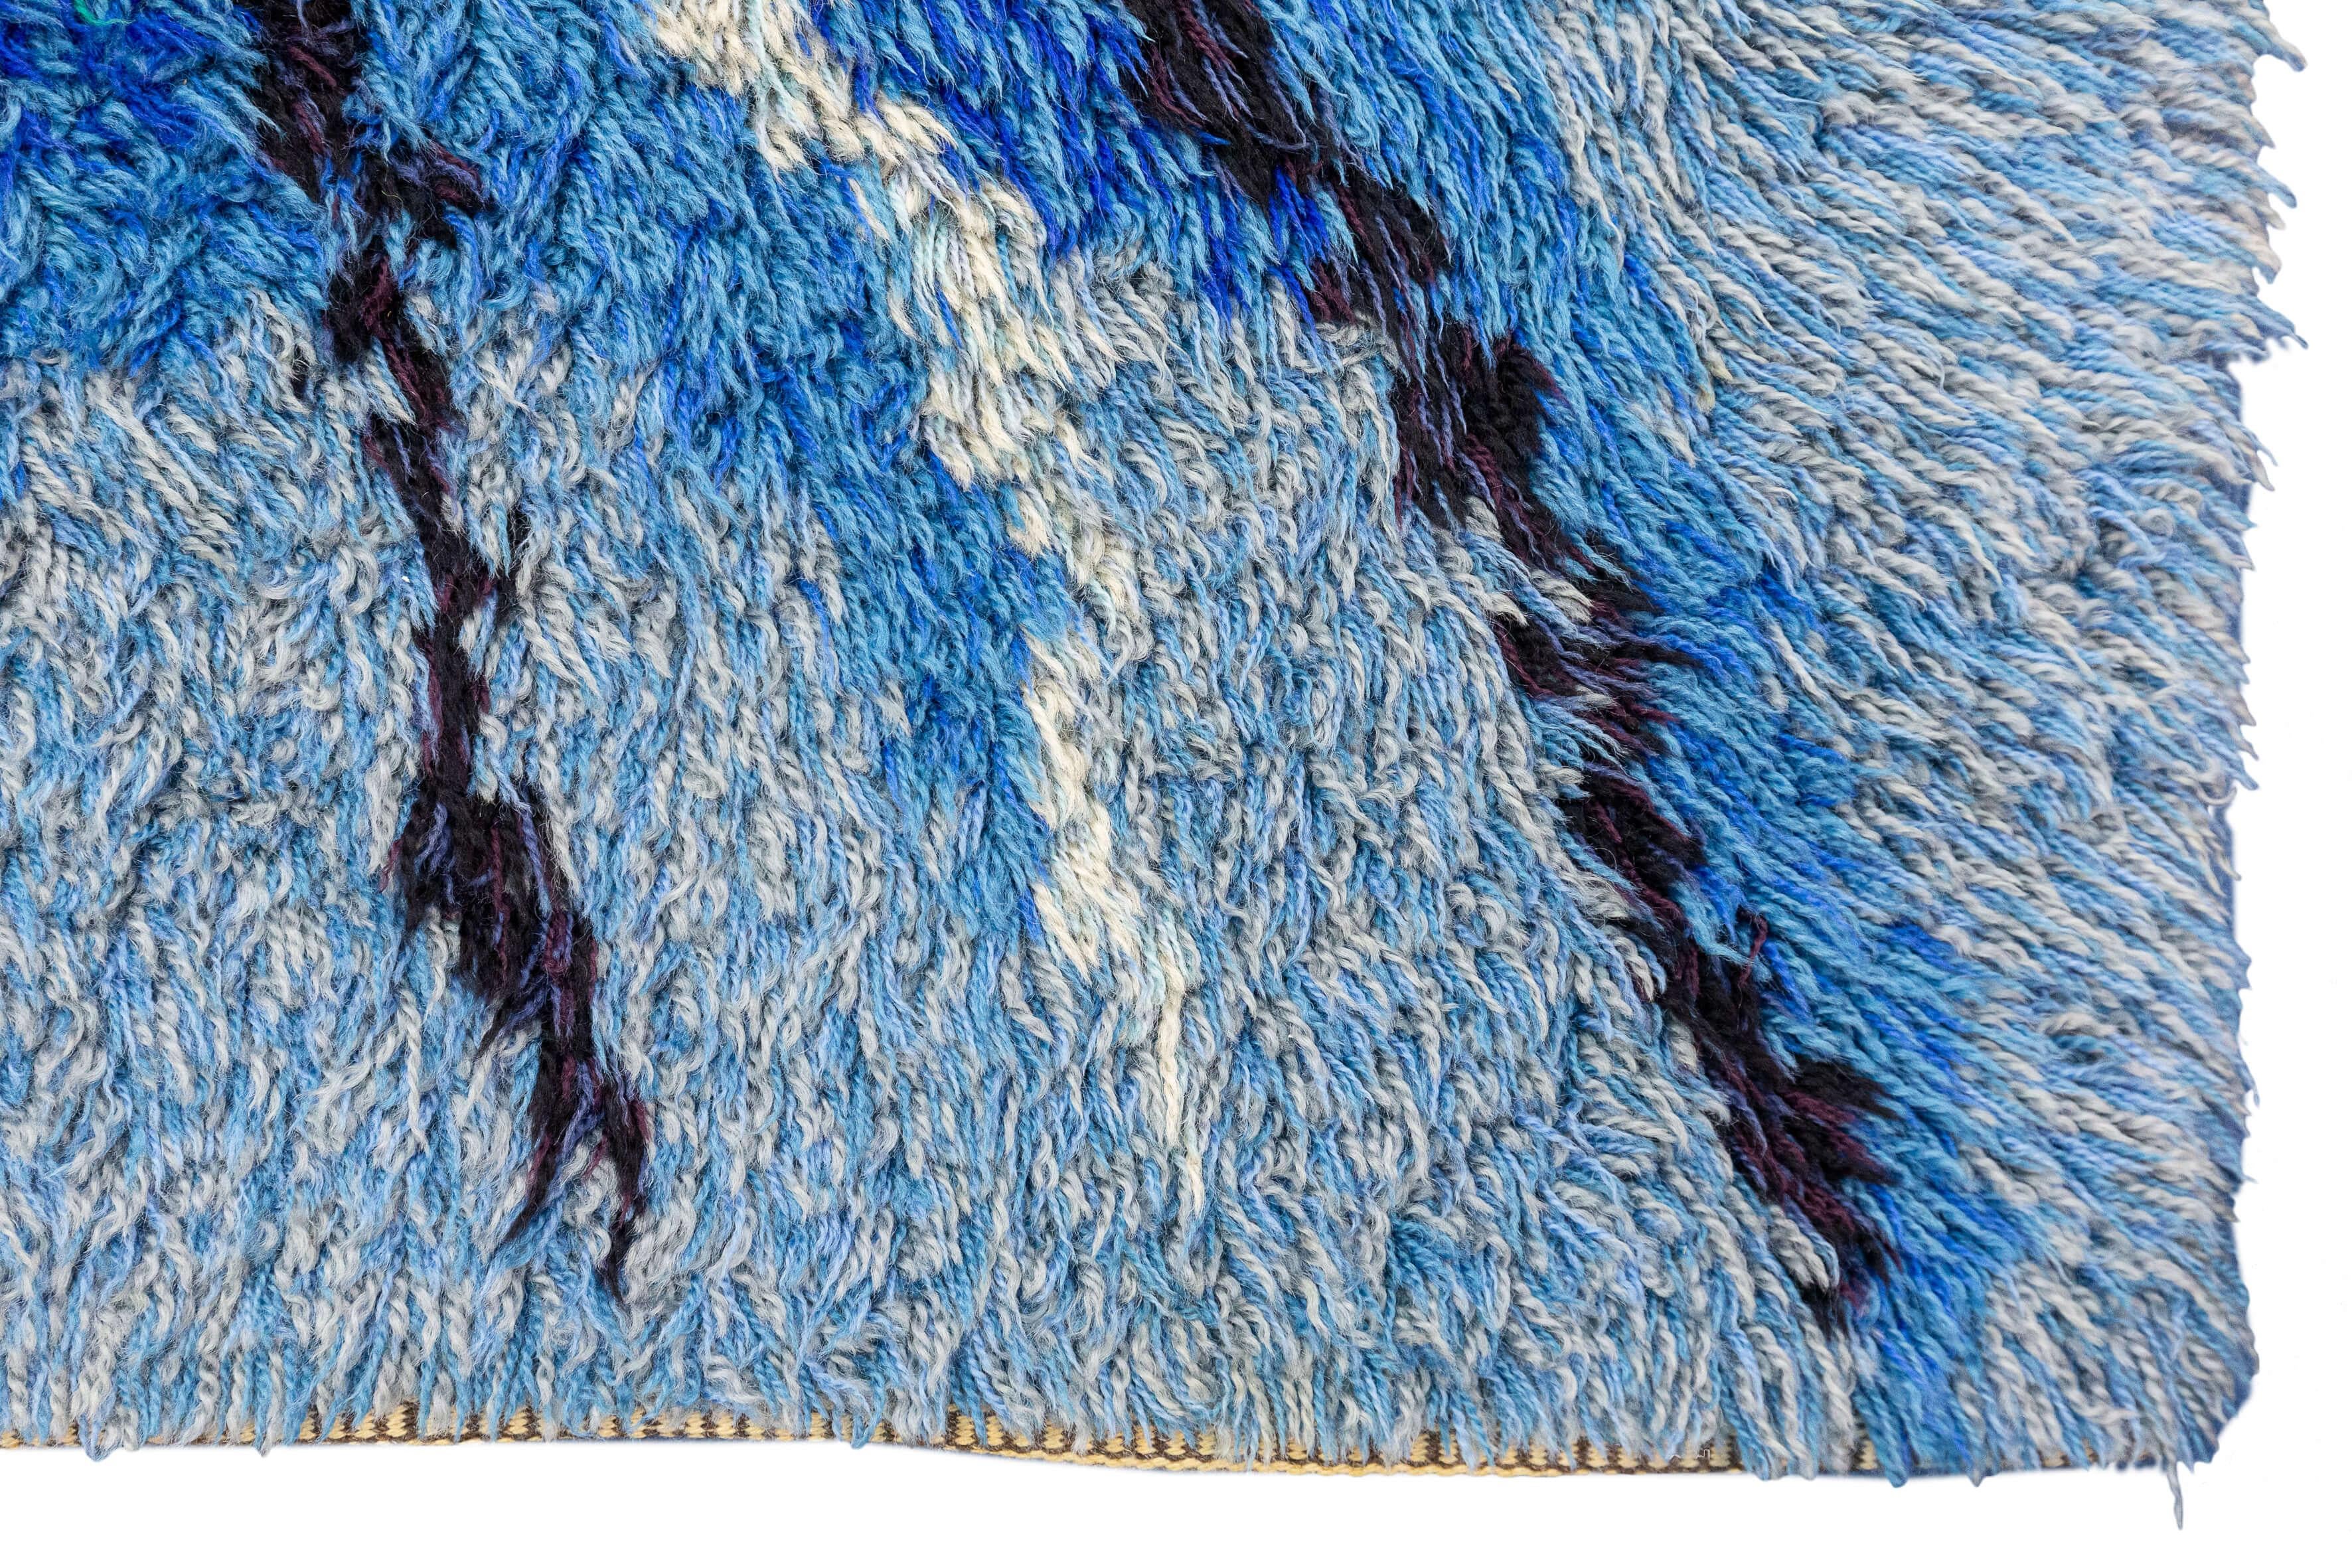 Der schwedische Teppich Rya mit seinem abstrakten Muster in Violett- und Blautönen ist ein wirklich einzigartiges und besonderes Stück, das jedem Raum einen lebendigen und modernen Touch verleiht. Die Kombination von abstrakten Mustern schafft ein